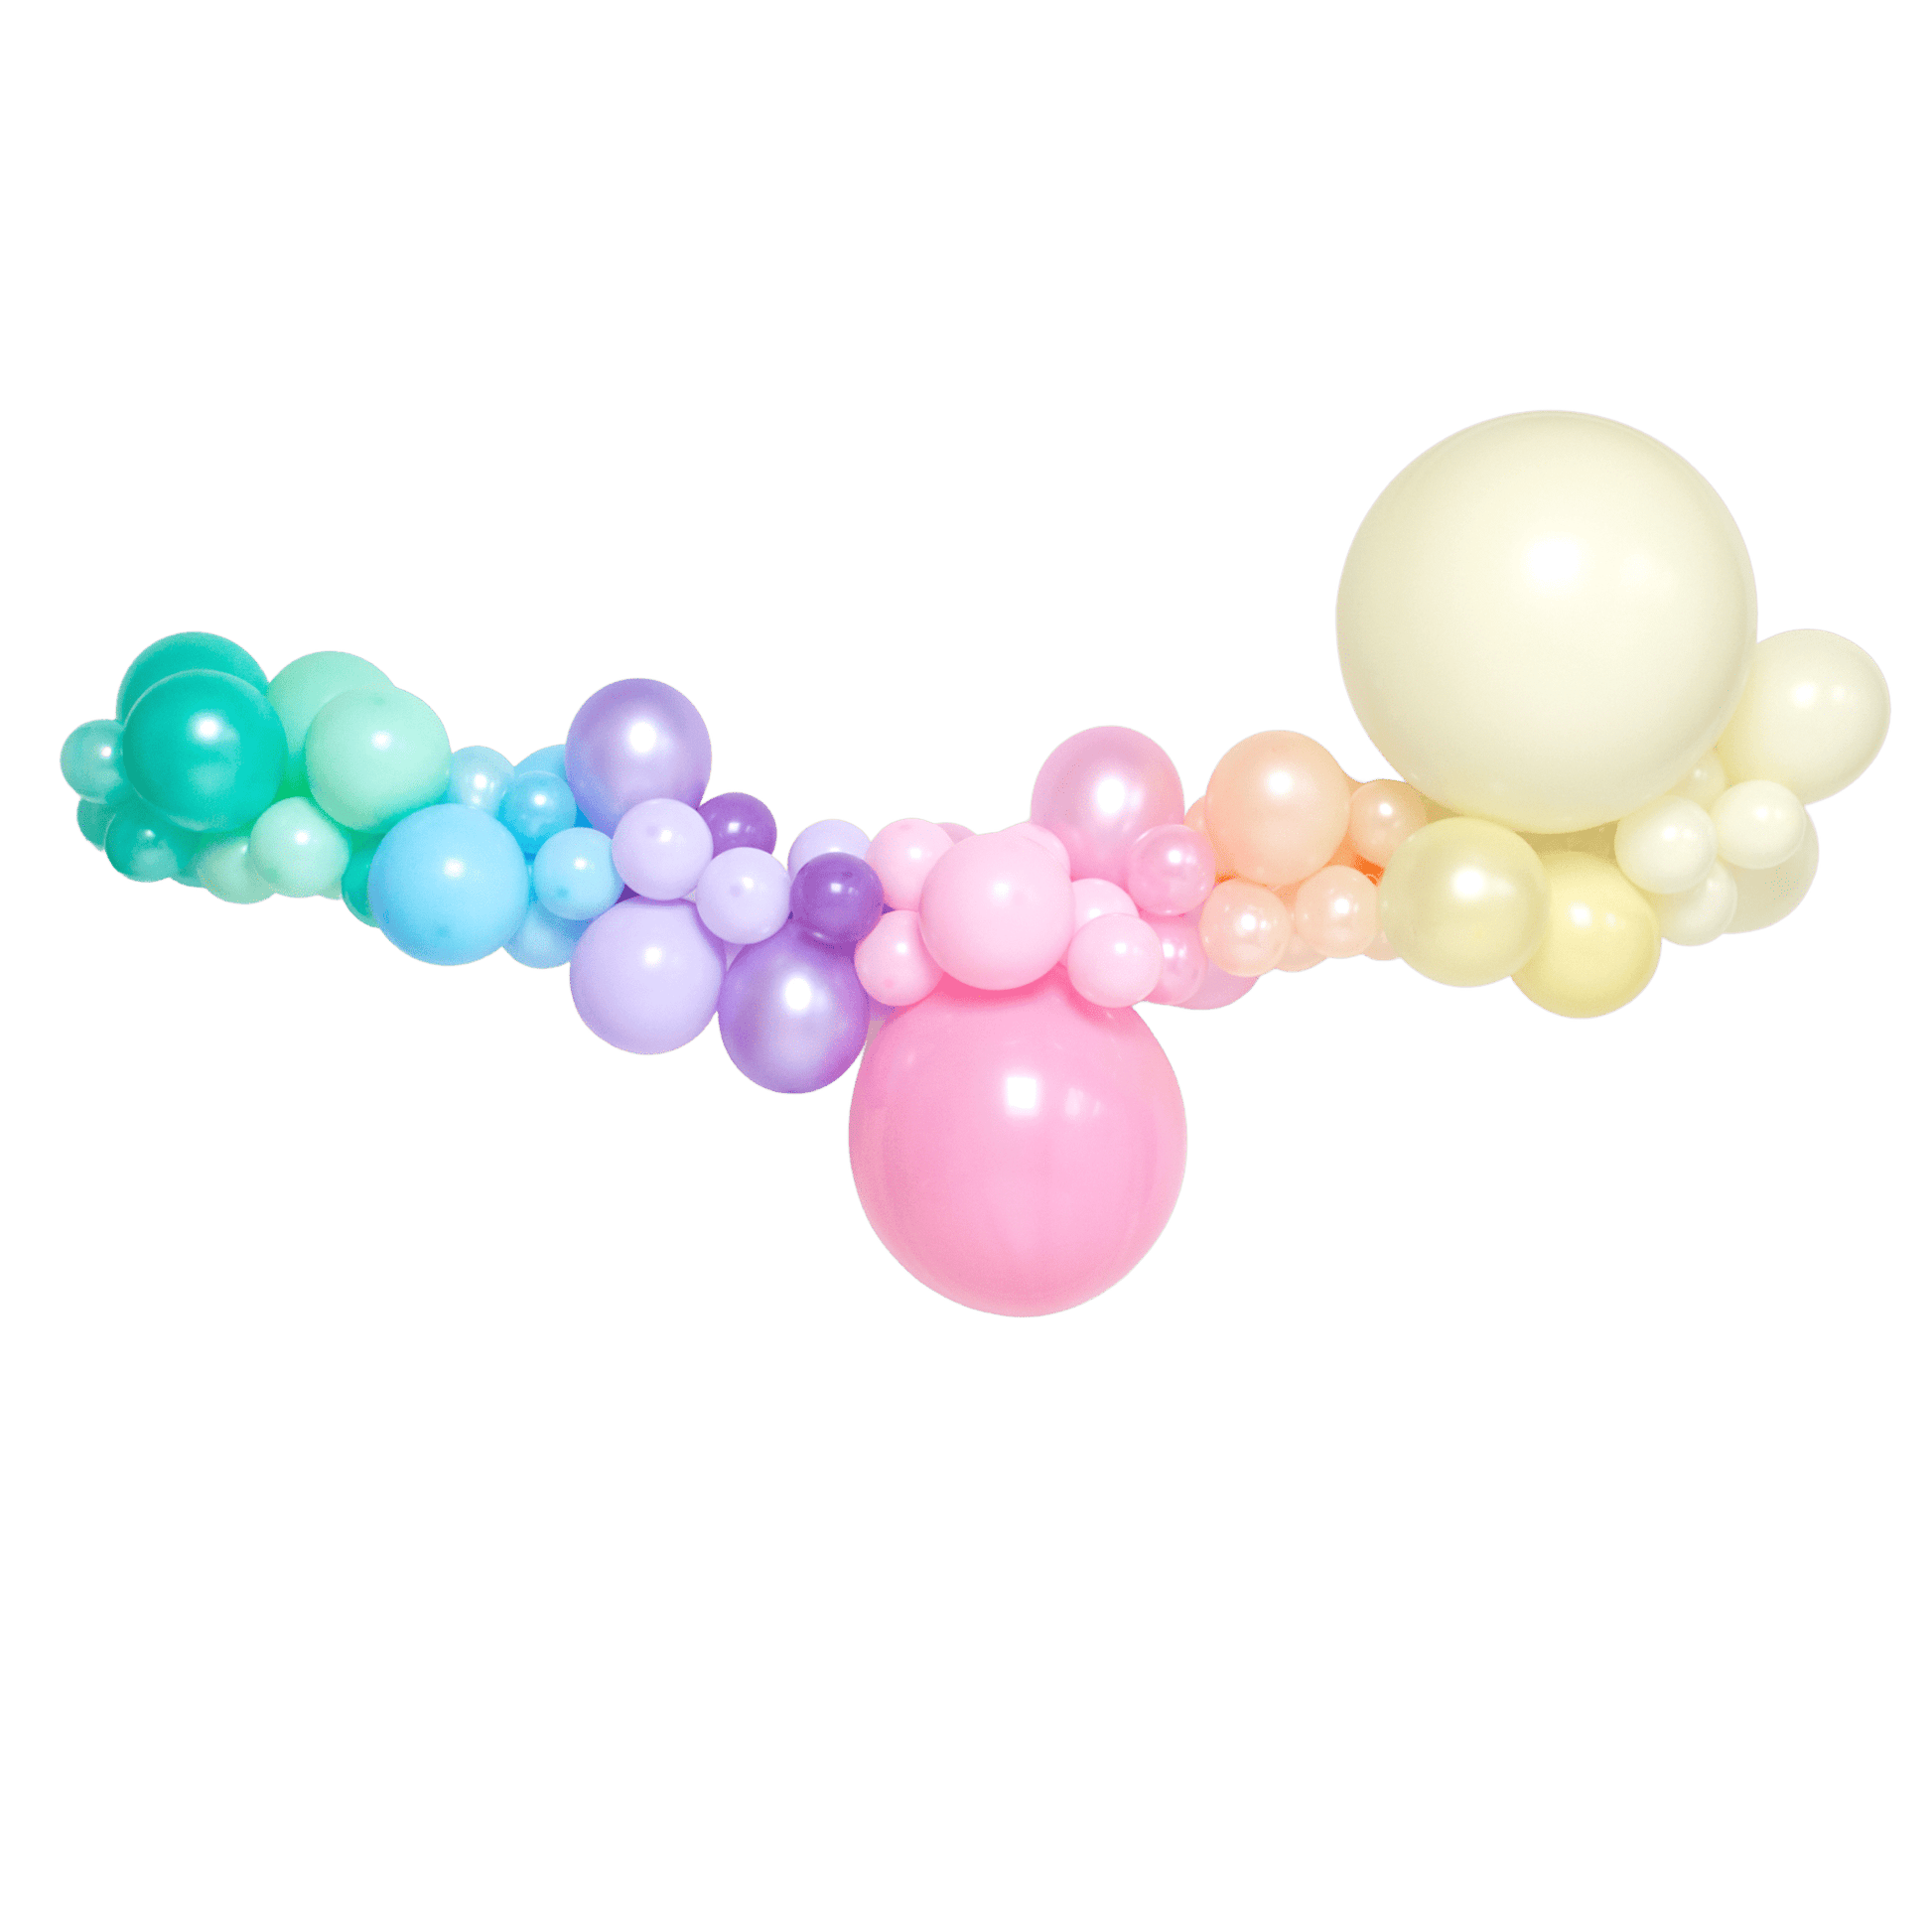 Balloon Garland Kit | Pastel Organic Balloon Garlands PLPS Designed